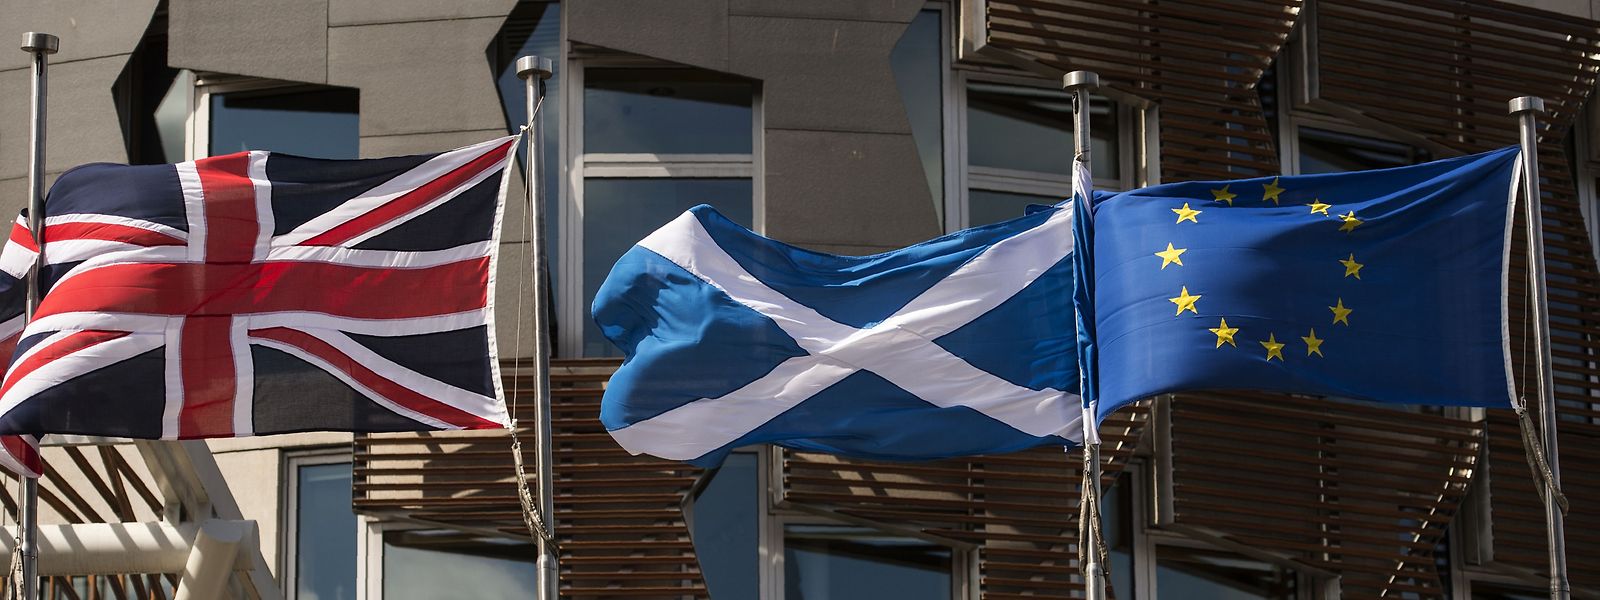 Der Austritt Großbritanniens aus der EU hat die schottischen Unabhängigkeitsbestrebungen befeuert.